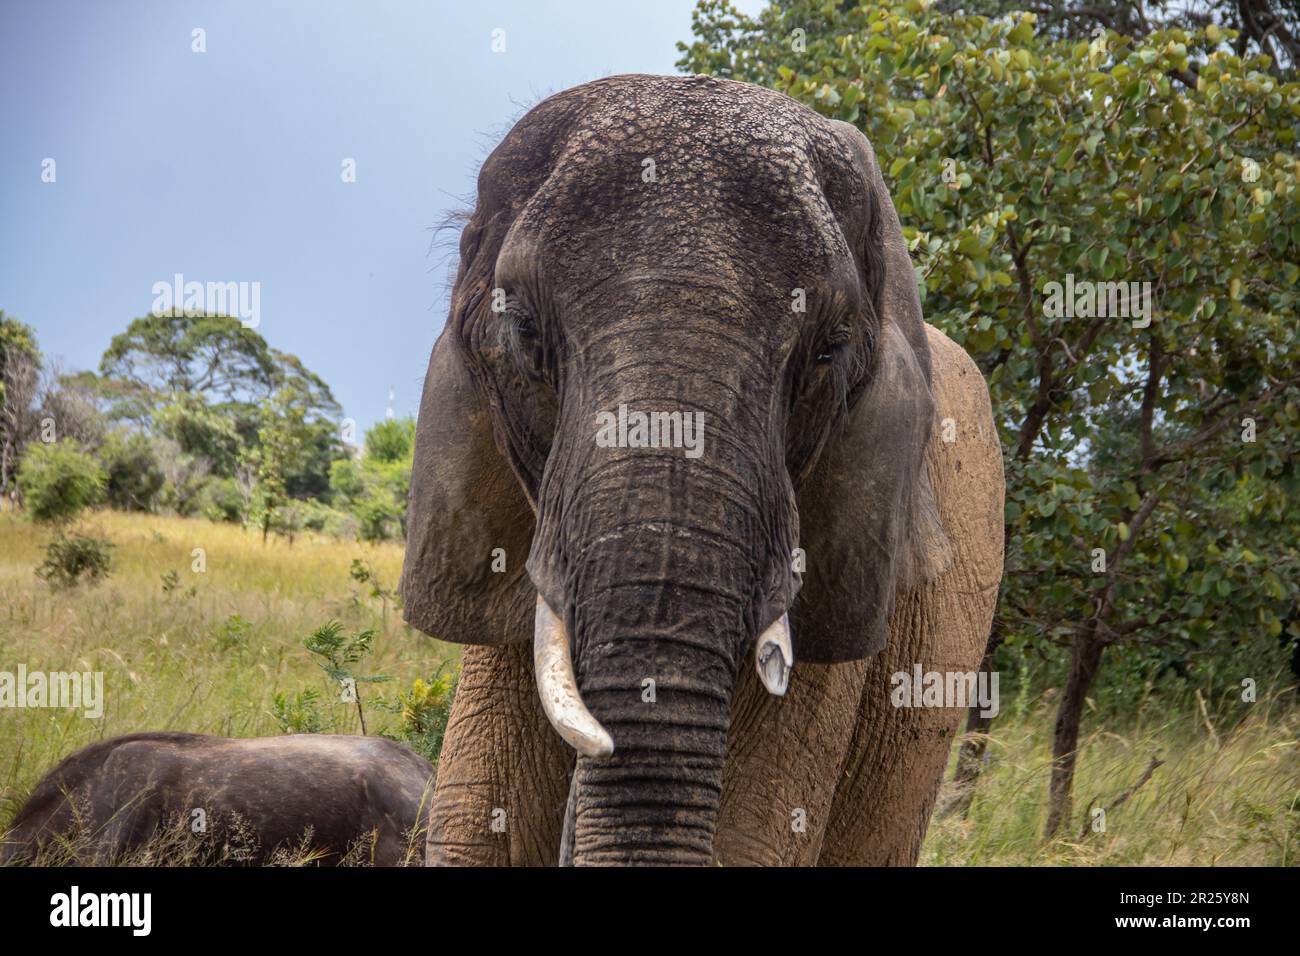 Des membres de cinq grands animaux africains, éléphants et buffles marchant ensemble dans la savane lors d'un safari africain en véhicule ouvert au Zimbabwe Banque D'Images